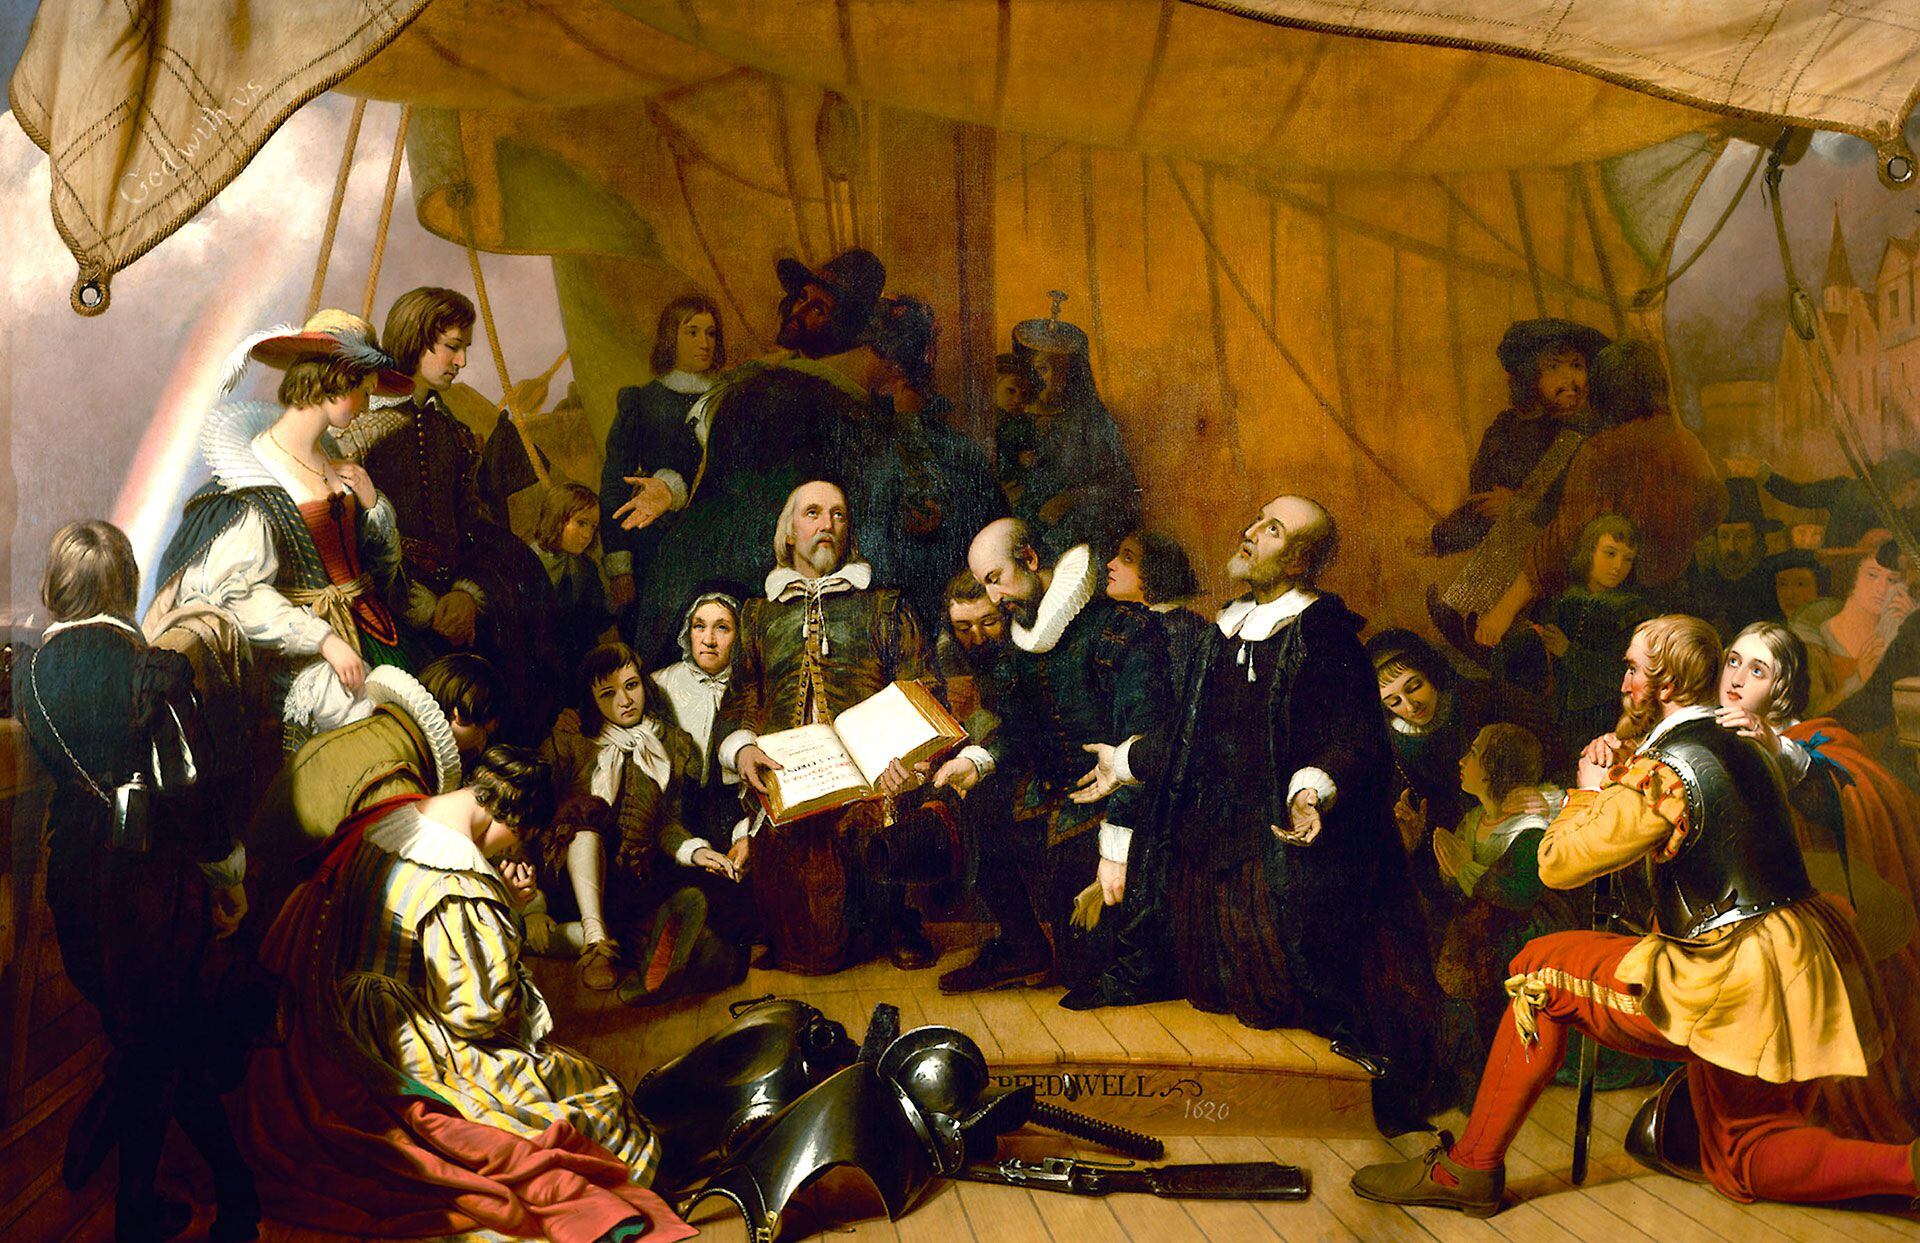 Peregrinos protestantes en la cubierta del barco Speedwell antes de su salida de Leiden, Holanda, el 22 de julio de 1620, en un cuadro de Robert W. Weir